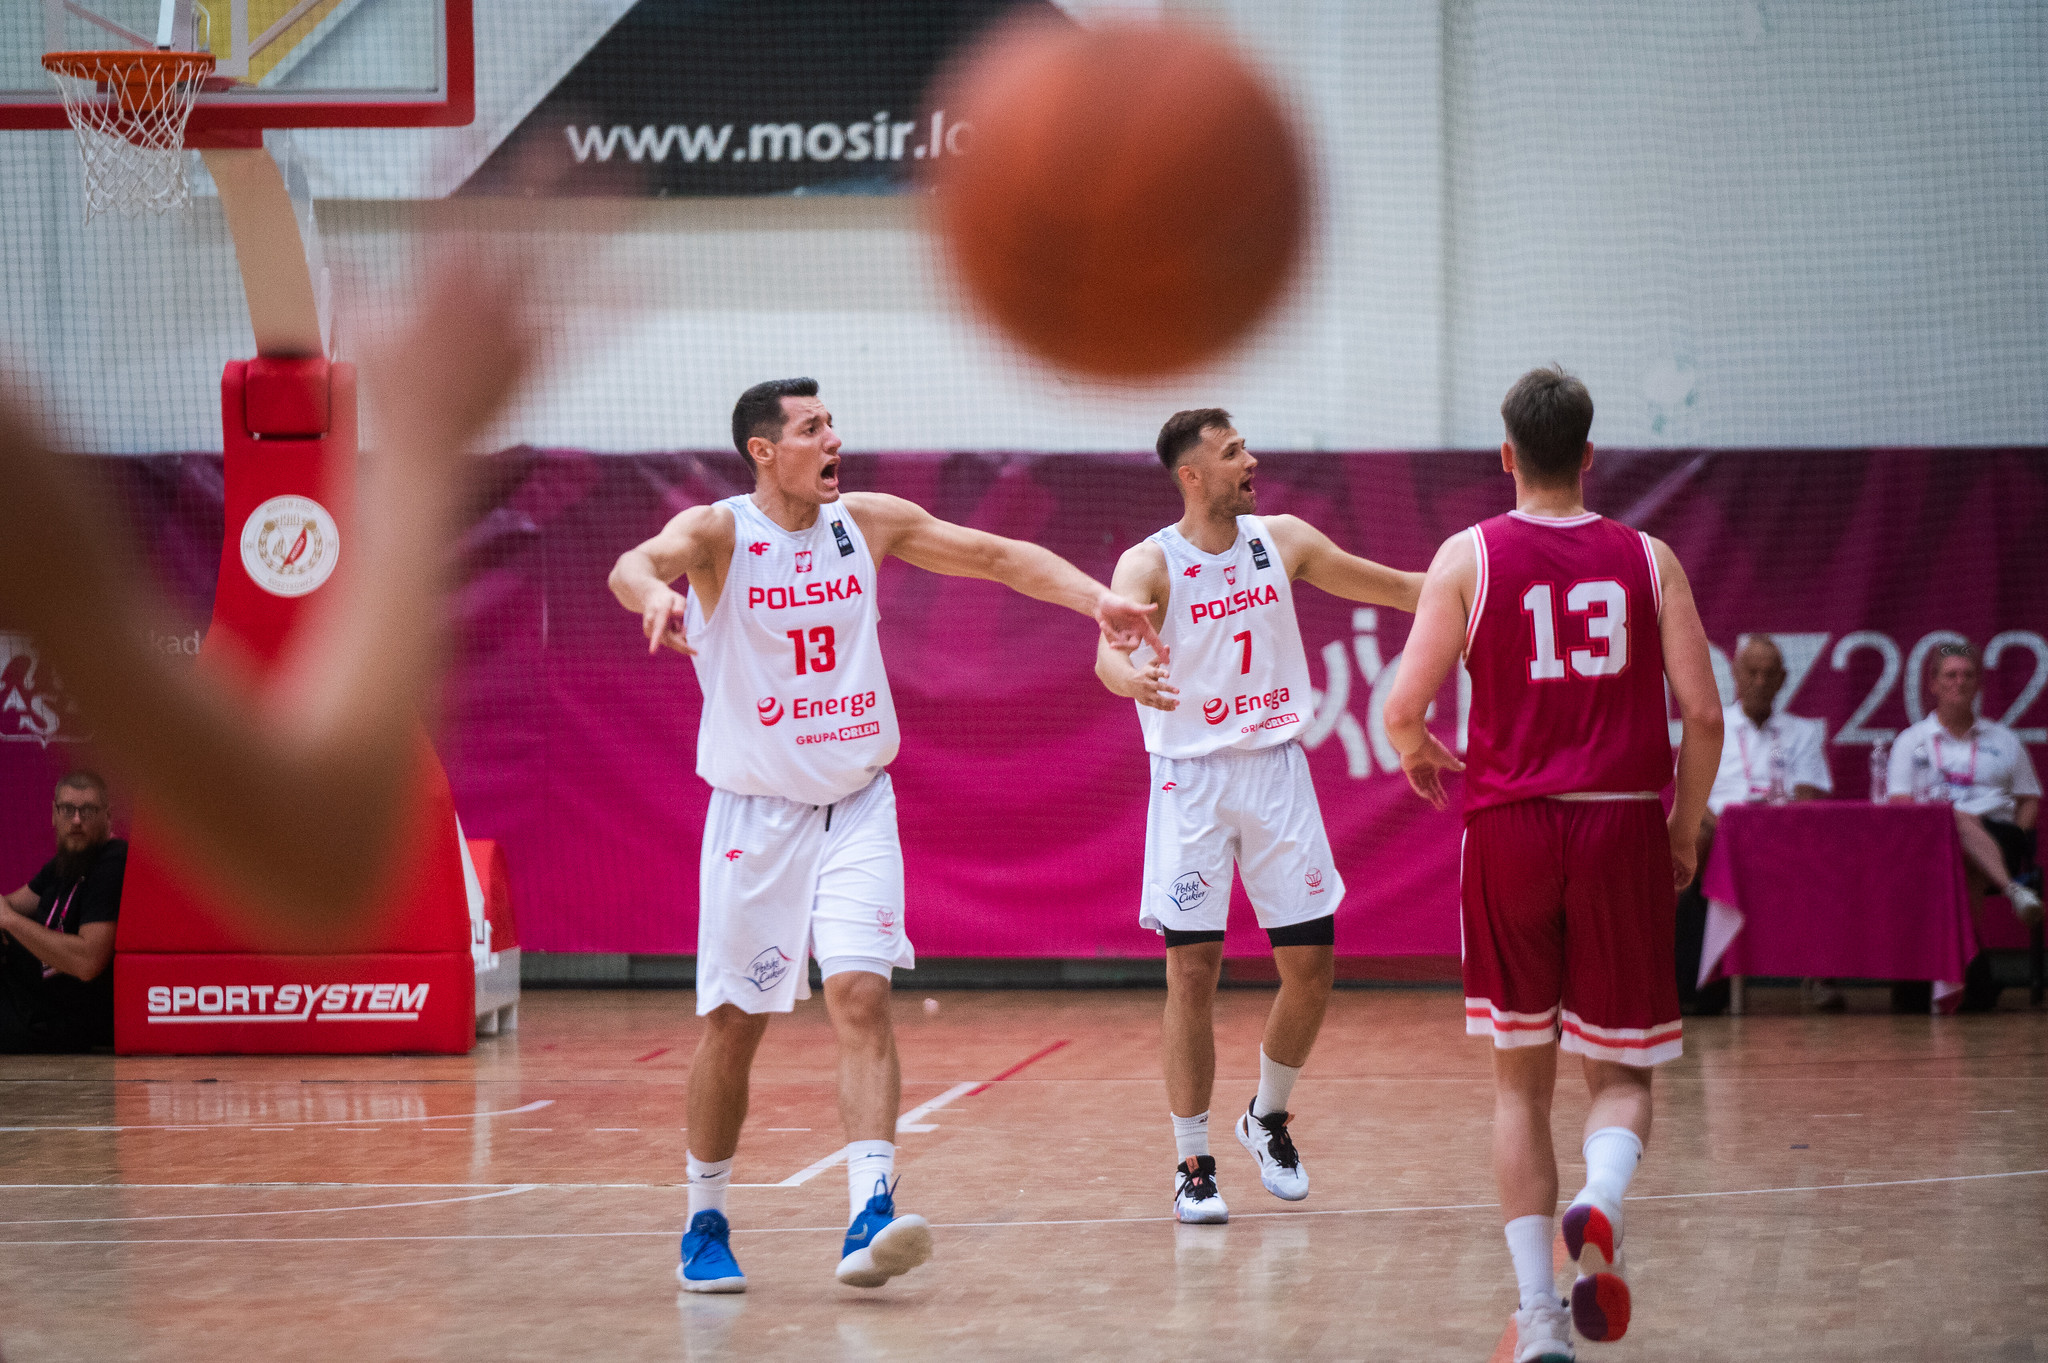 Day 14 - Basketball (Małachowskiego)